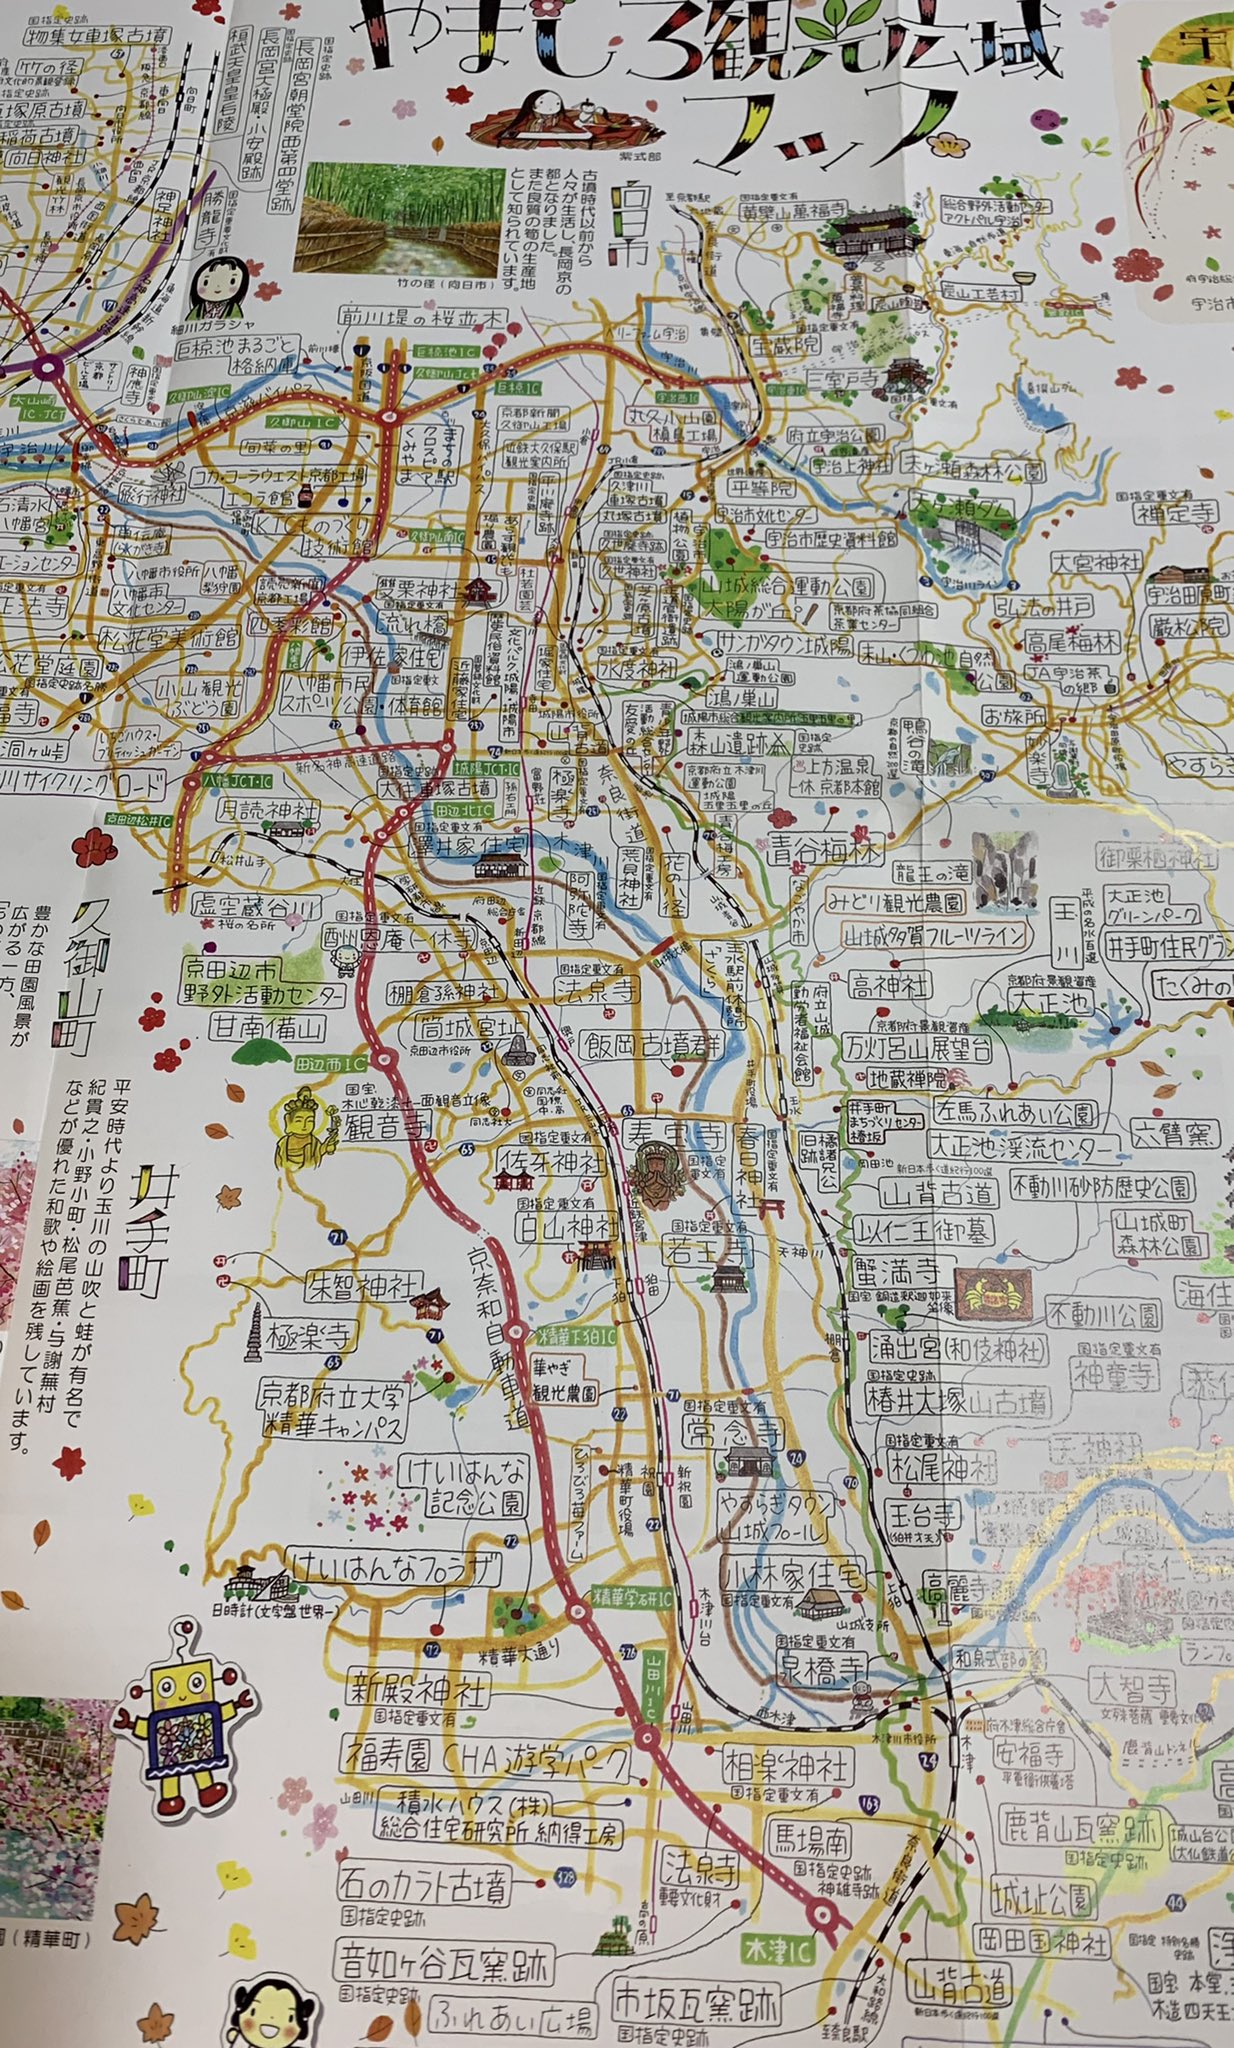 Uzivatel ながたみどり Na Twitteru イラストマップで旅する京都 今日の 鎌倉殿の13人 に登場した以仁王ゆかりの地 やましろ観光広域マップに描かせていただいていました 京都 イラストレーター 以仁王 鎌倉殿の13人 イラストマップ 地図 イラスト やま